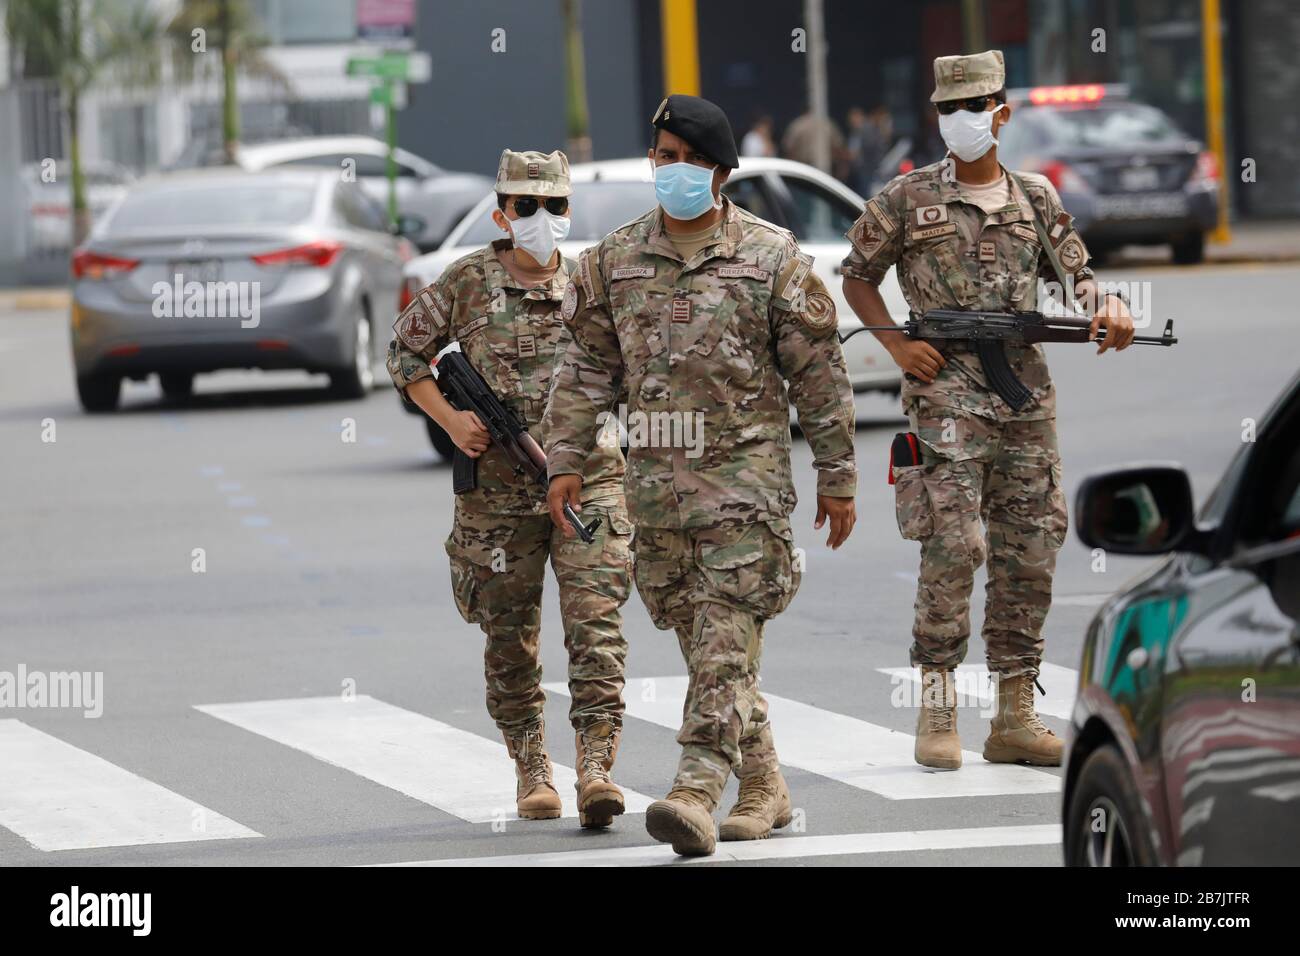 Perú, Lima, 16 de marzo de 2020: Patrulla del ejército peruano al primer día de cuarentena obligatoria después de la alerta de salud COVID-19 Foto de stock